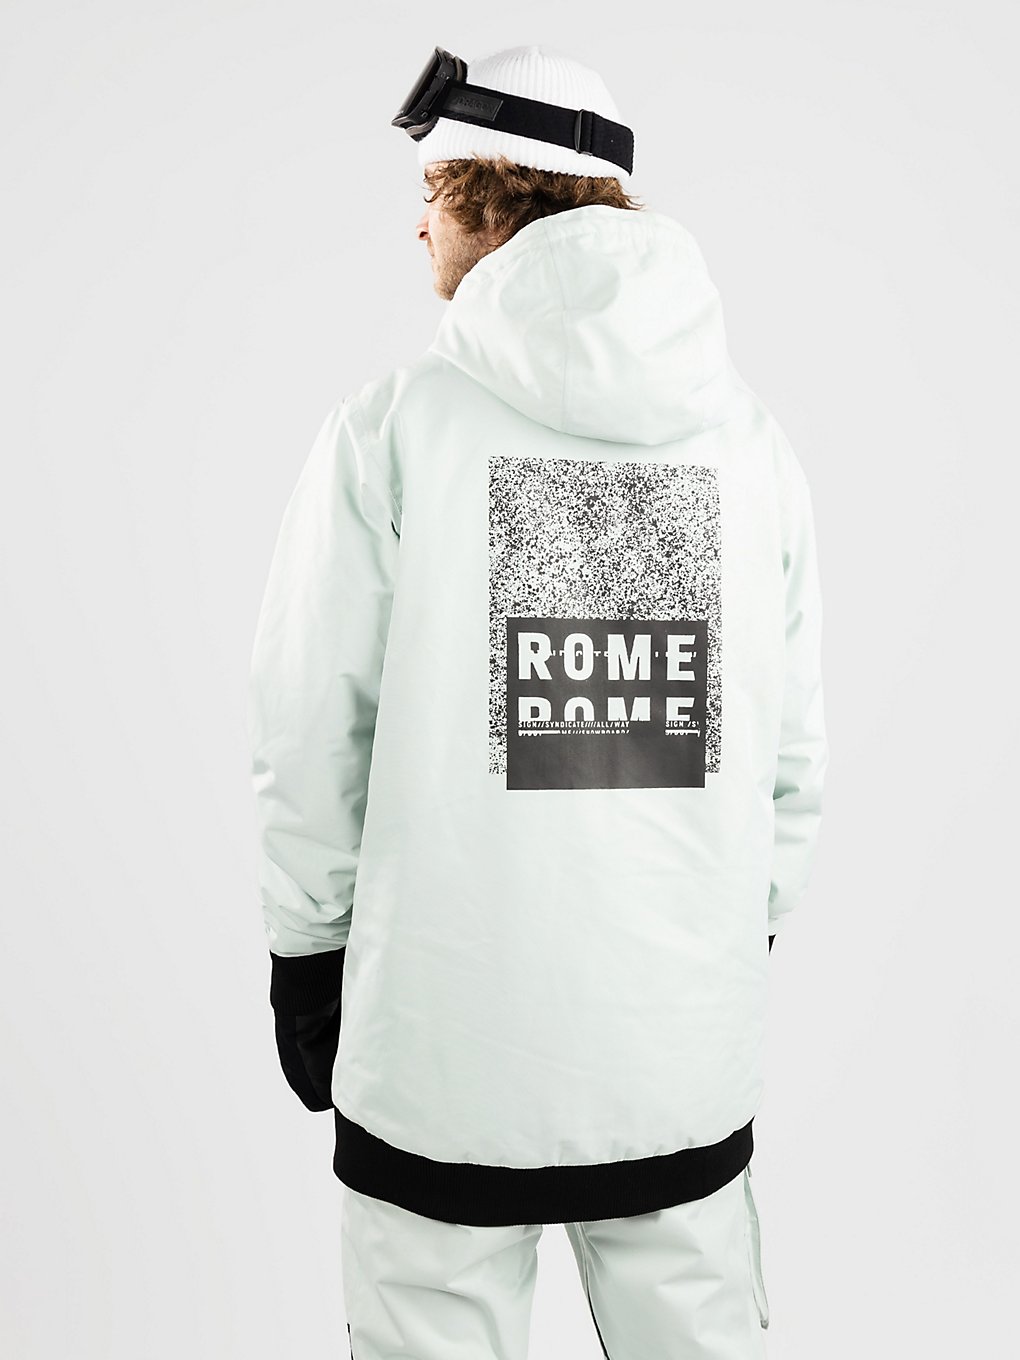 Rome Drifter Jacket green grey kaufen